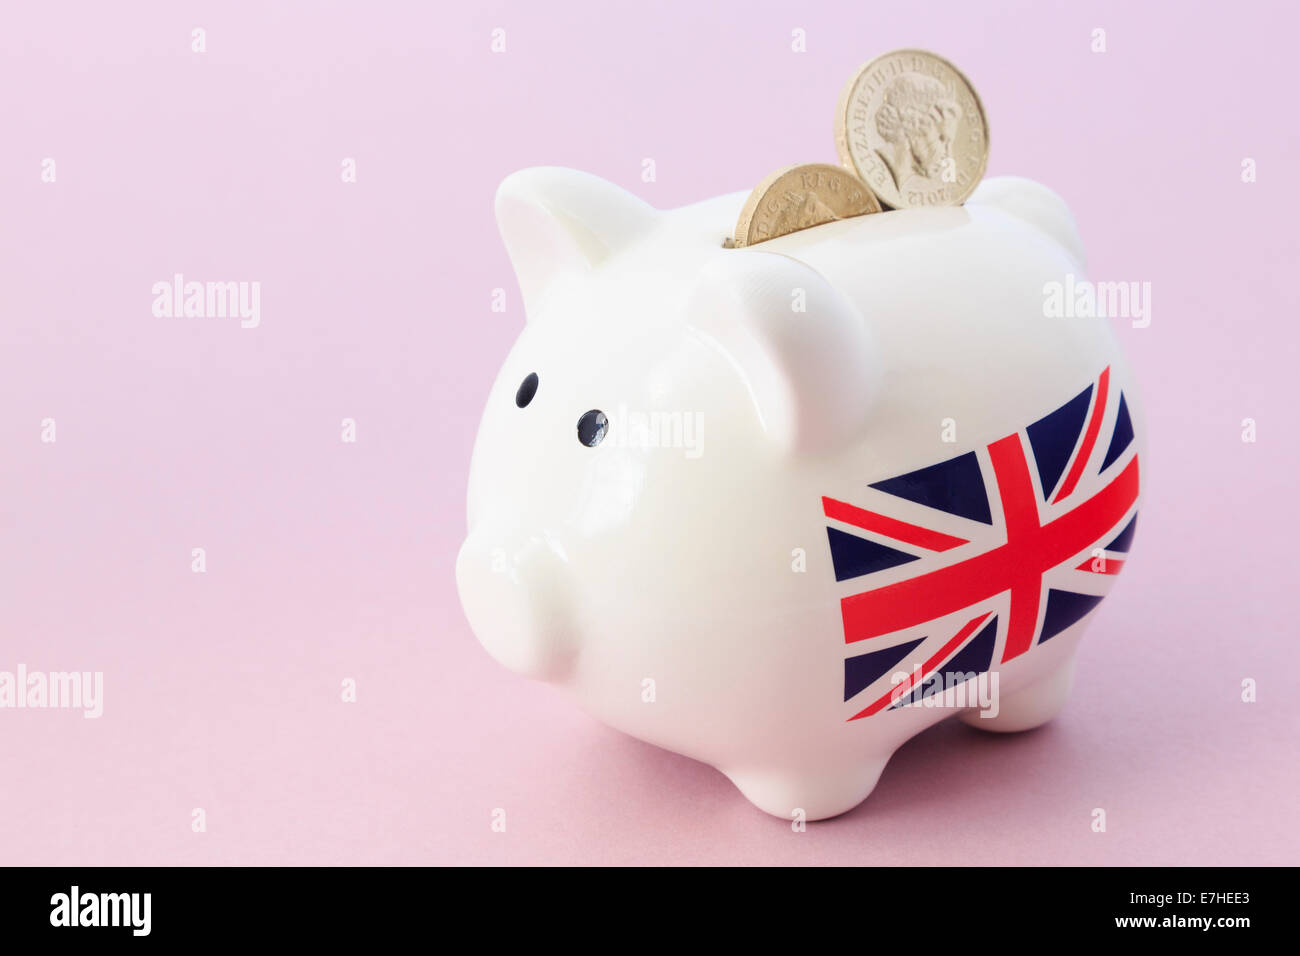 Salvadanaio con britannica Union Jack e due sterling pound monete nella slot su un sfondo di colore rosa. Regno Unito, Gran Bretagna Foto Stock